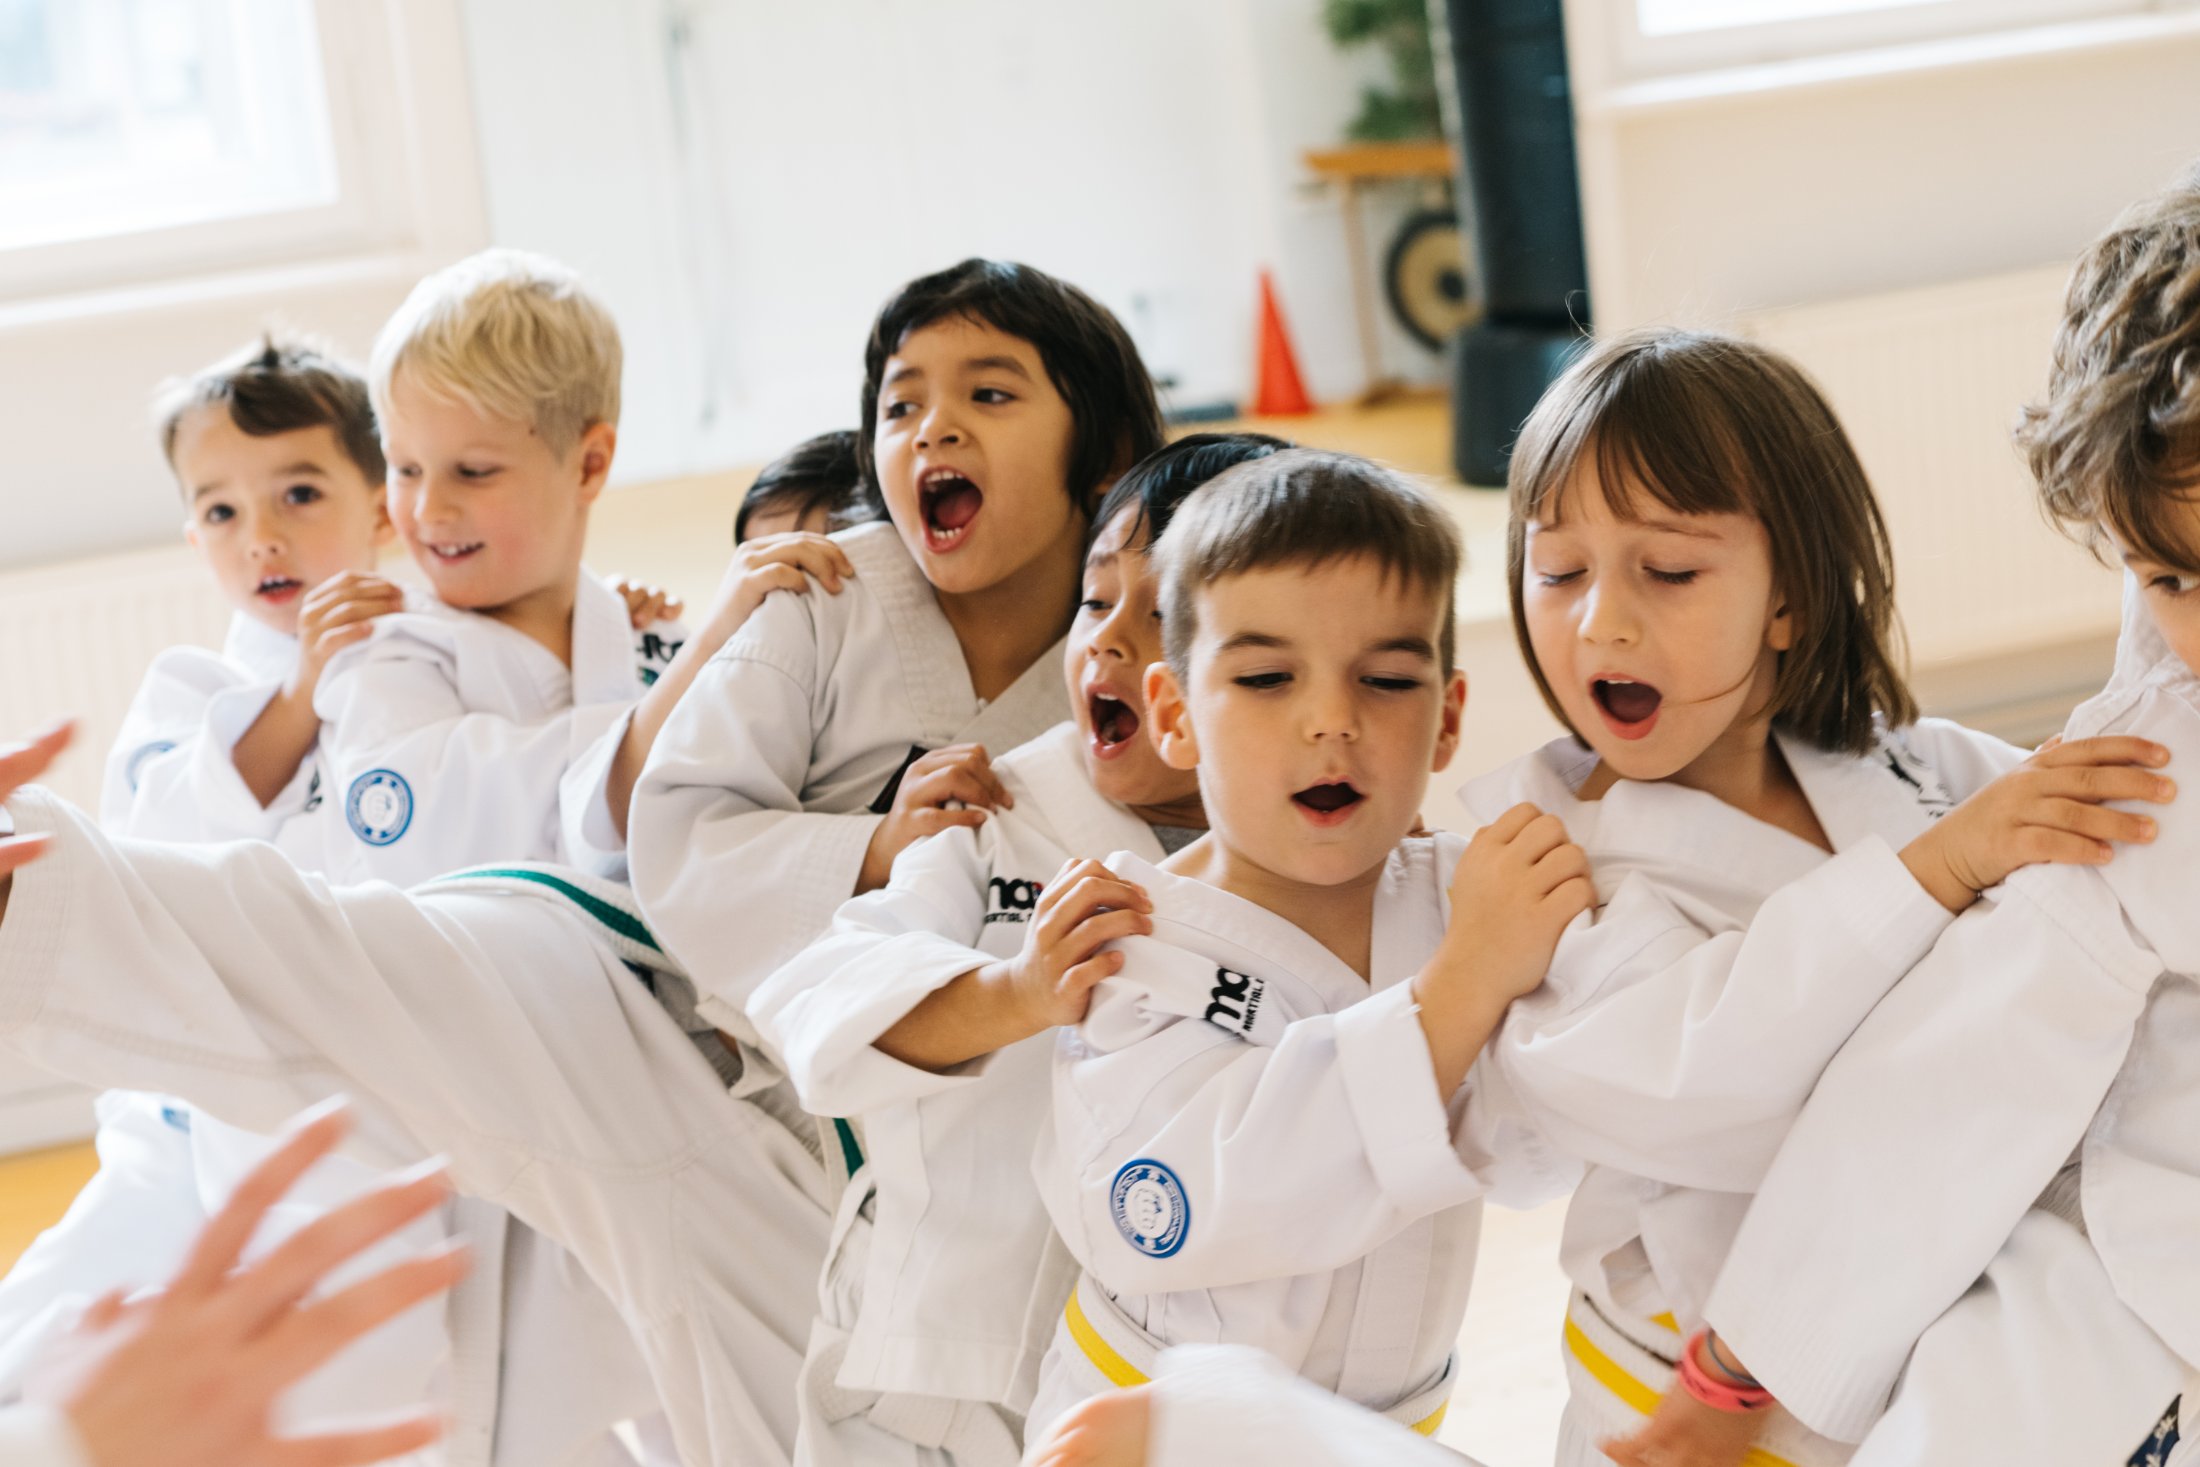 Taekwondo für Kinder ab 4 Jahre ✔ Entdecke deine Stärke und Disziplin 🚀 Jetzt zum Probetraining anmelden